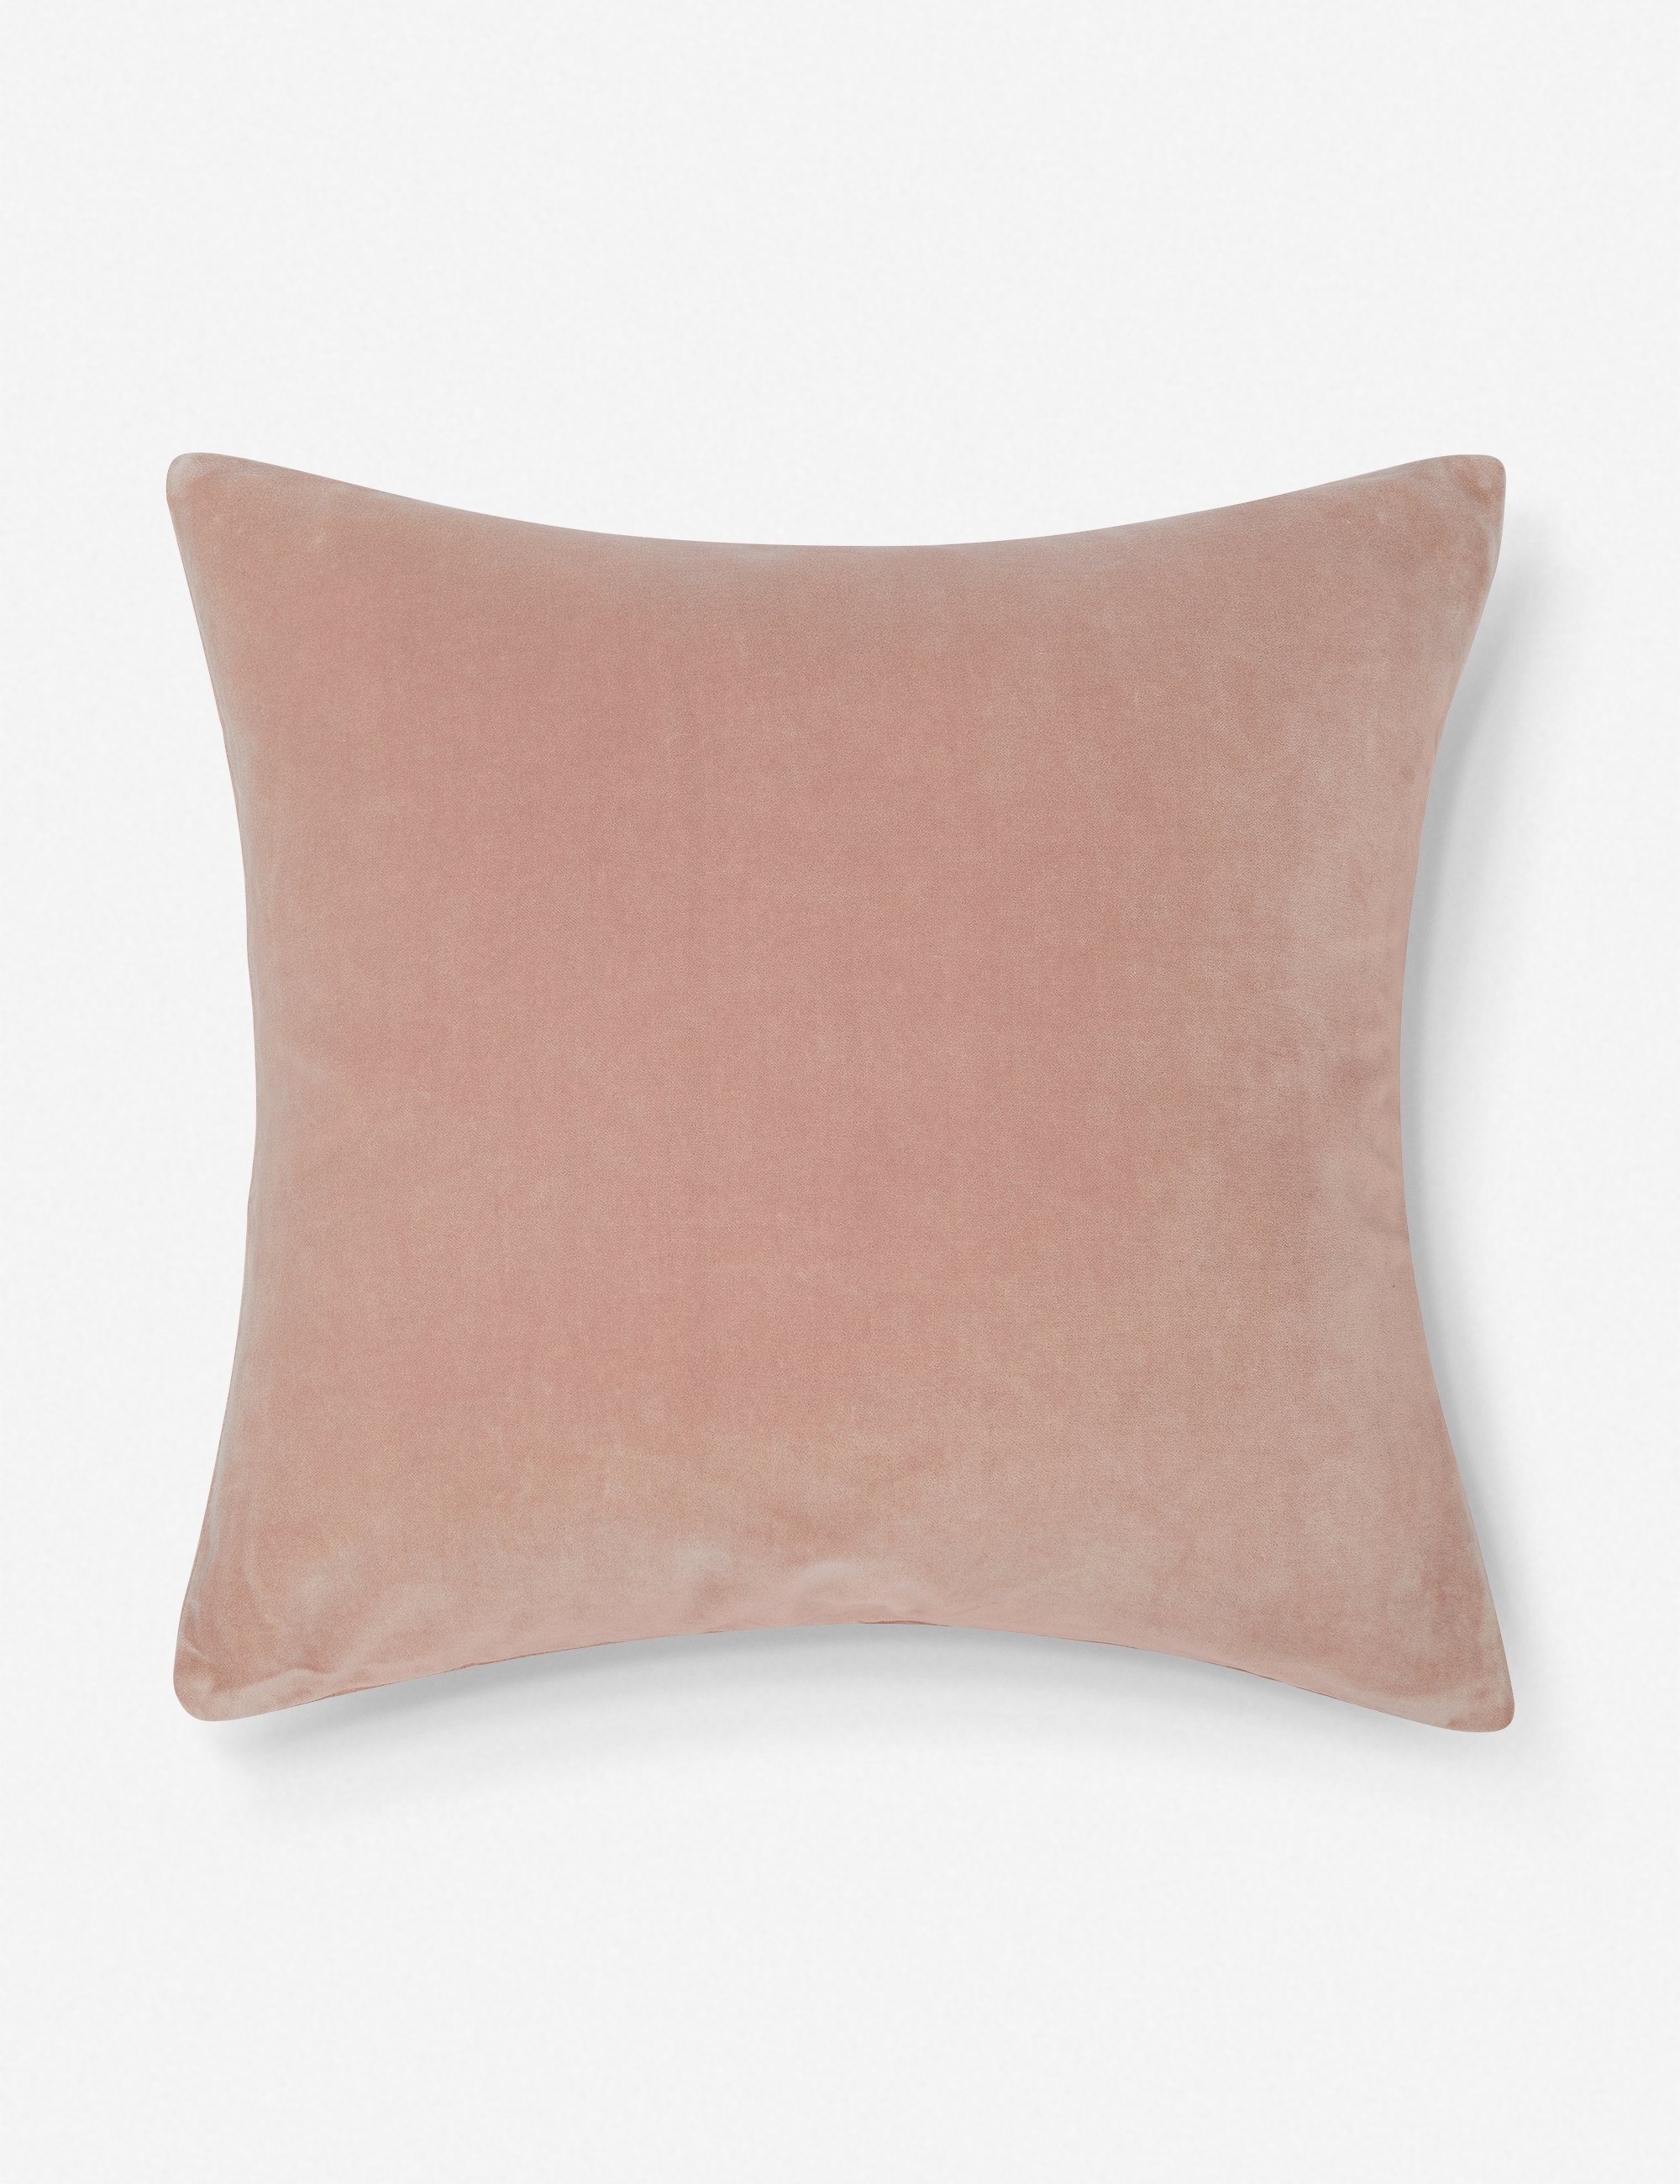 Charlotte Velvet Pillow, Rosewater, 20" x 20" - Image 0